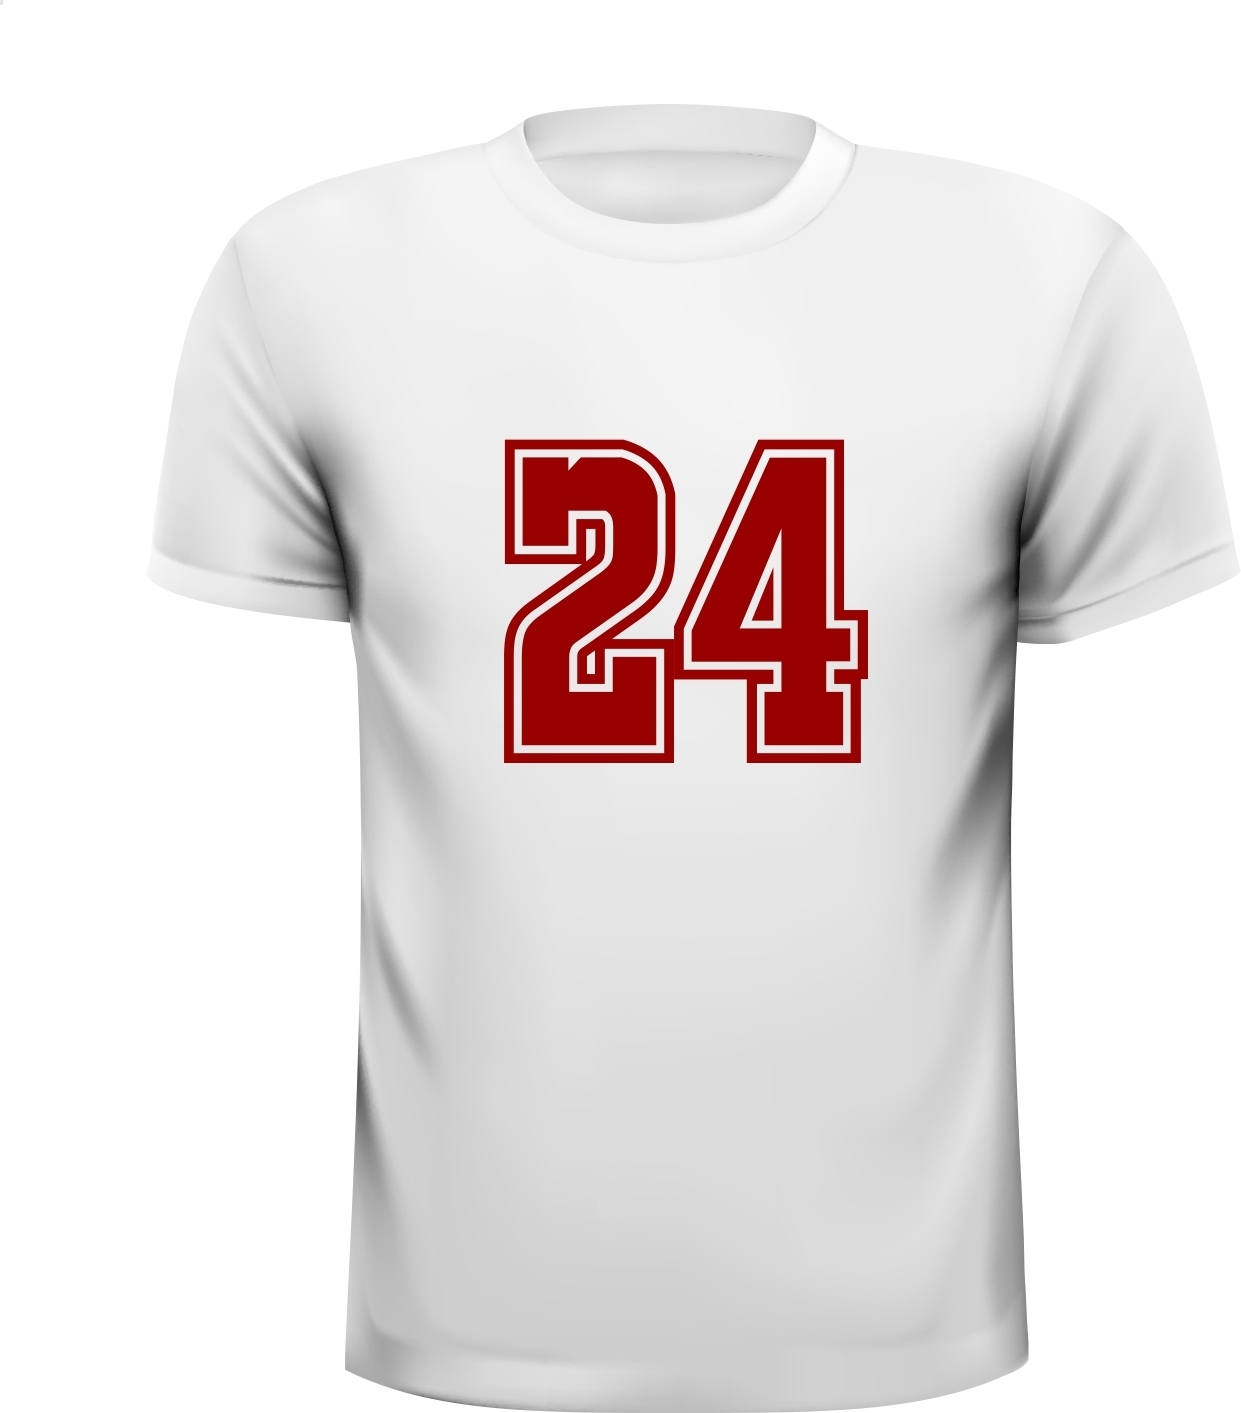 24 getal leeftijd T-shirt kado verjaardag